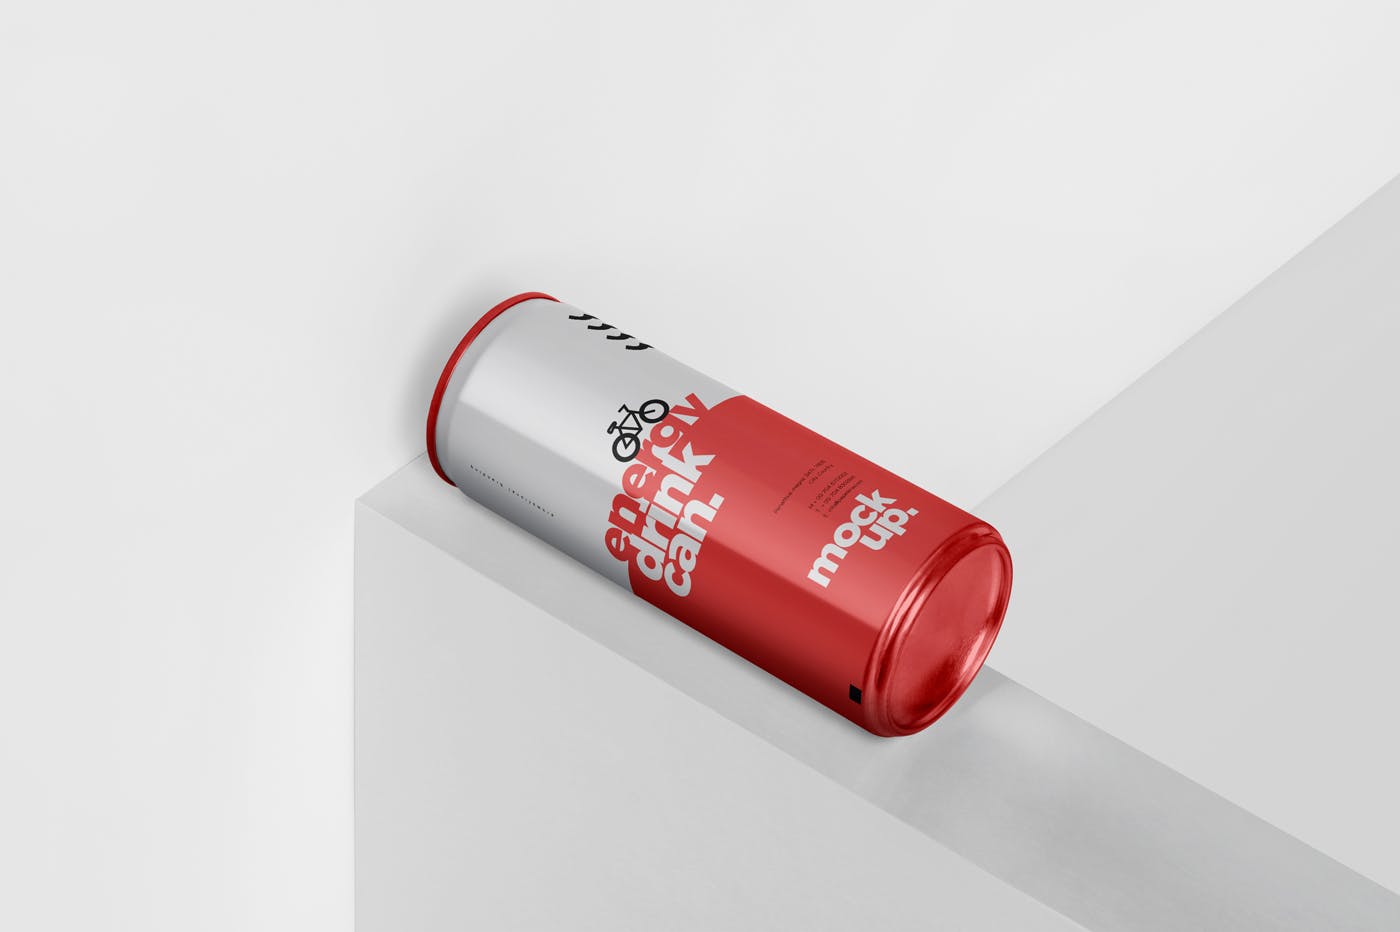 能量饮料易拉罐罐头外观设计16图库精选模板 Energy Drink Can Mock-Up – 250 ml插图(4)